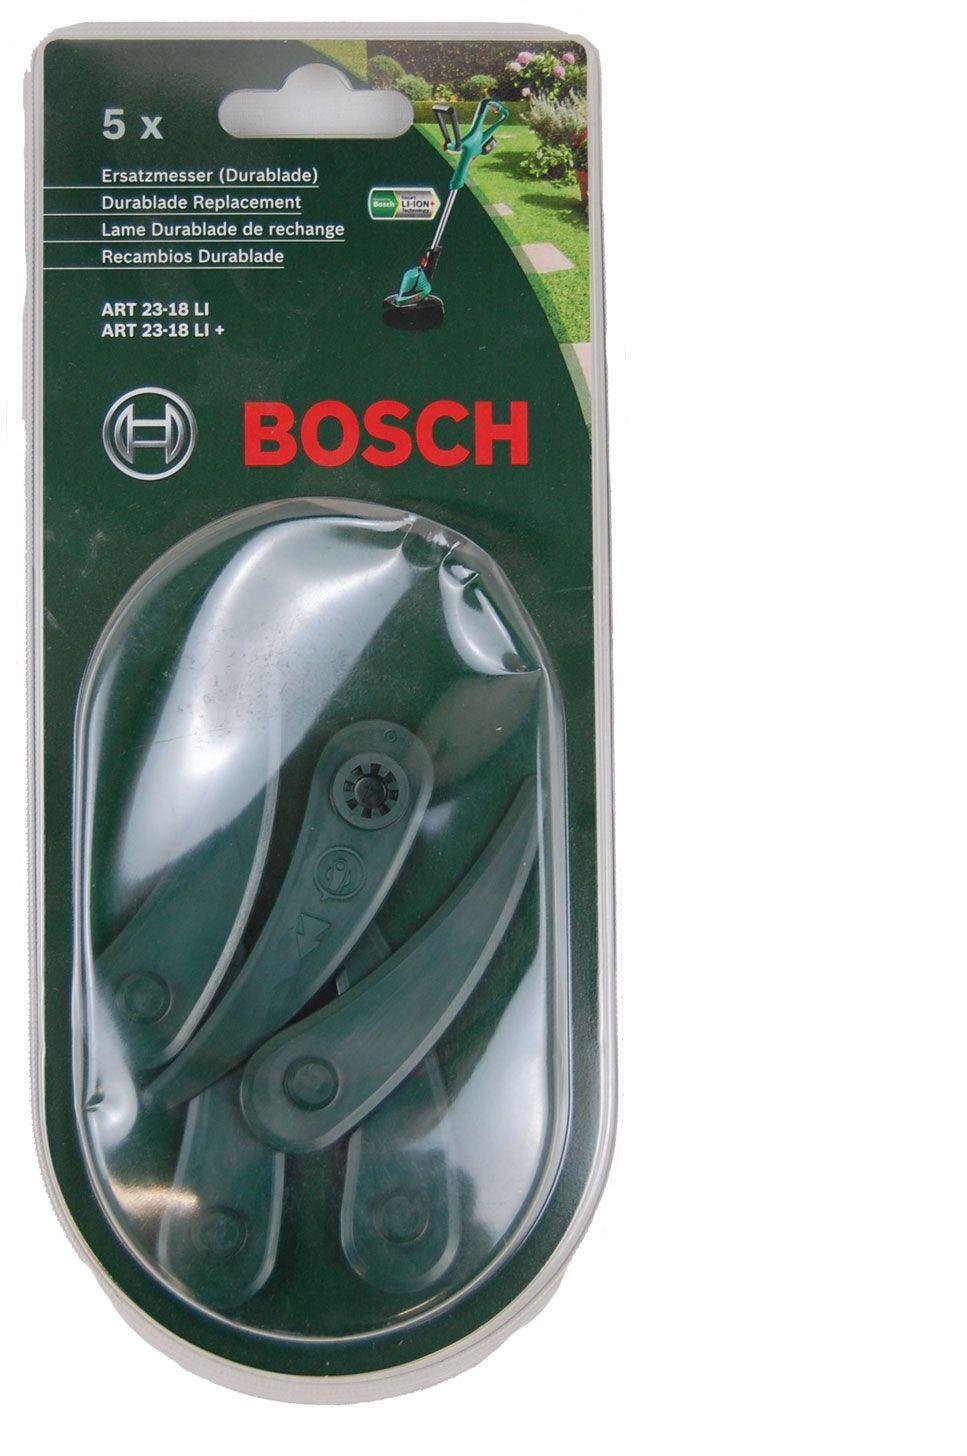 10x Bosch Rasentrimmer ART26-18LI Ersatz Kunststoffmesser Durablade Blades Sg 